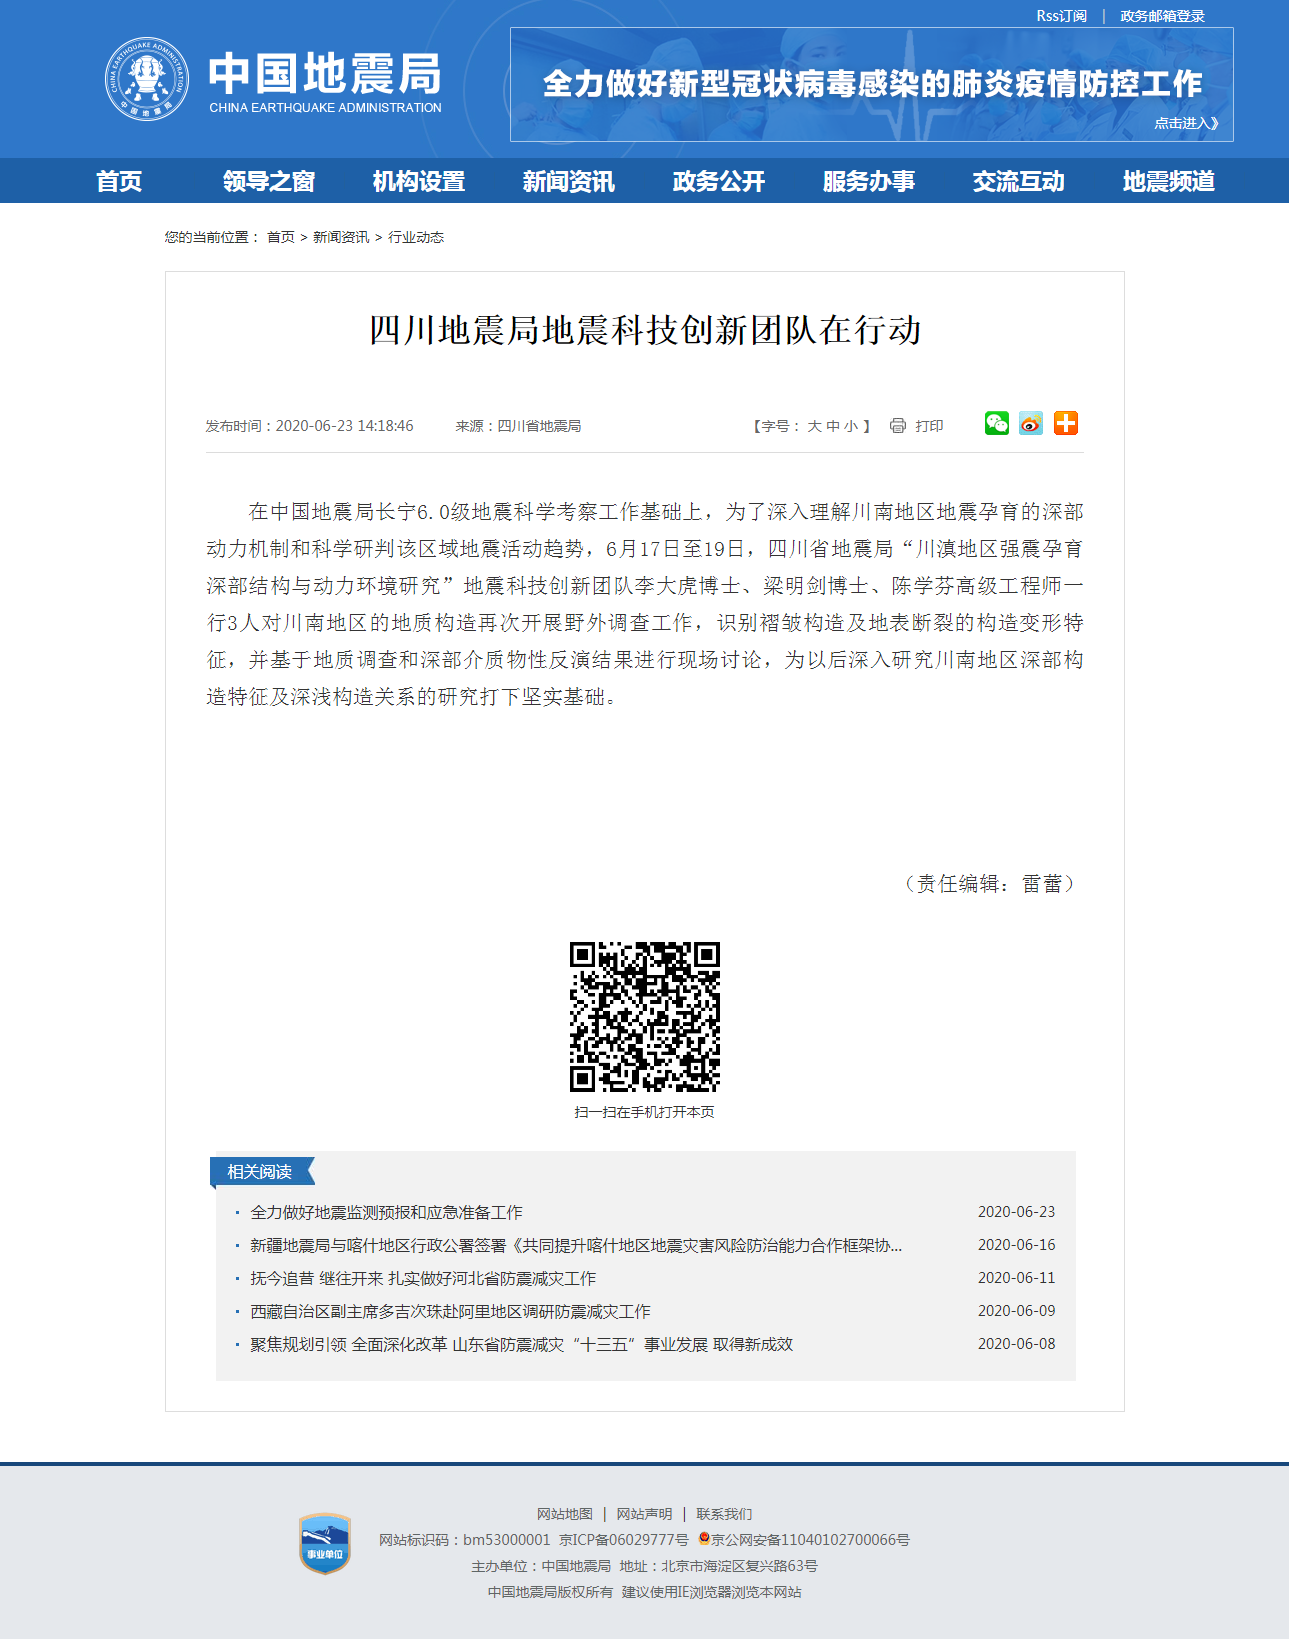 四川地震局地震科技创新团队在行动.png